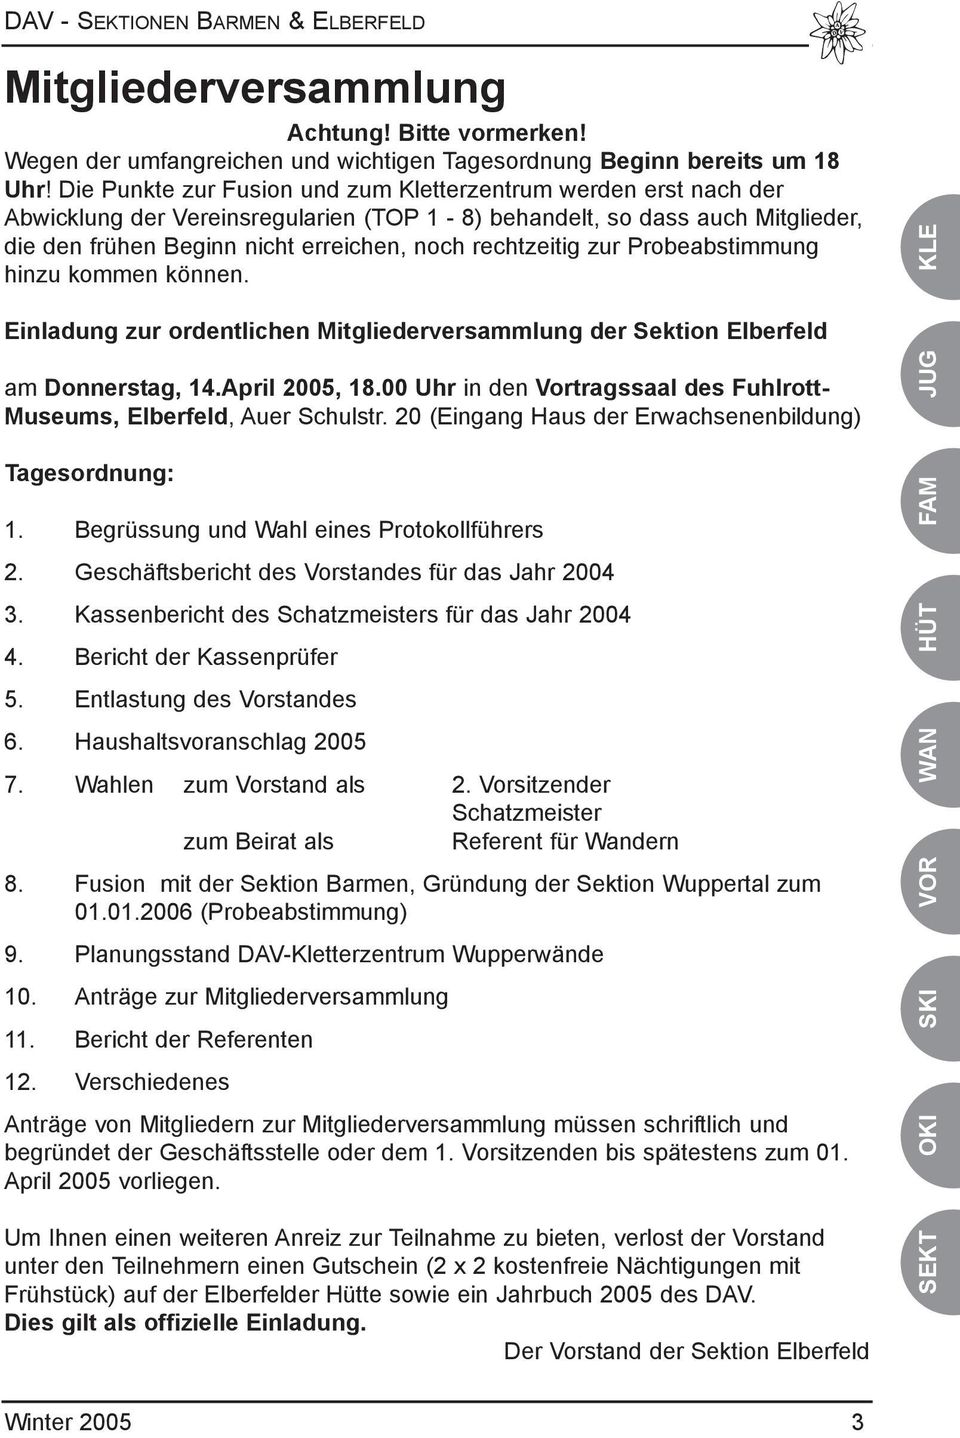 rechtzeitig zur Probeabstimmung hinzu kommen können. KLE Einladung zur ordentlichen Mitgliederversammlung der Sektion Elberfeld am Donnerstag, 14.April 2005, 18.